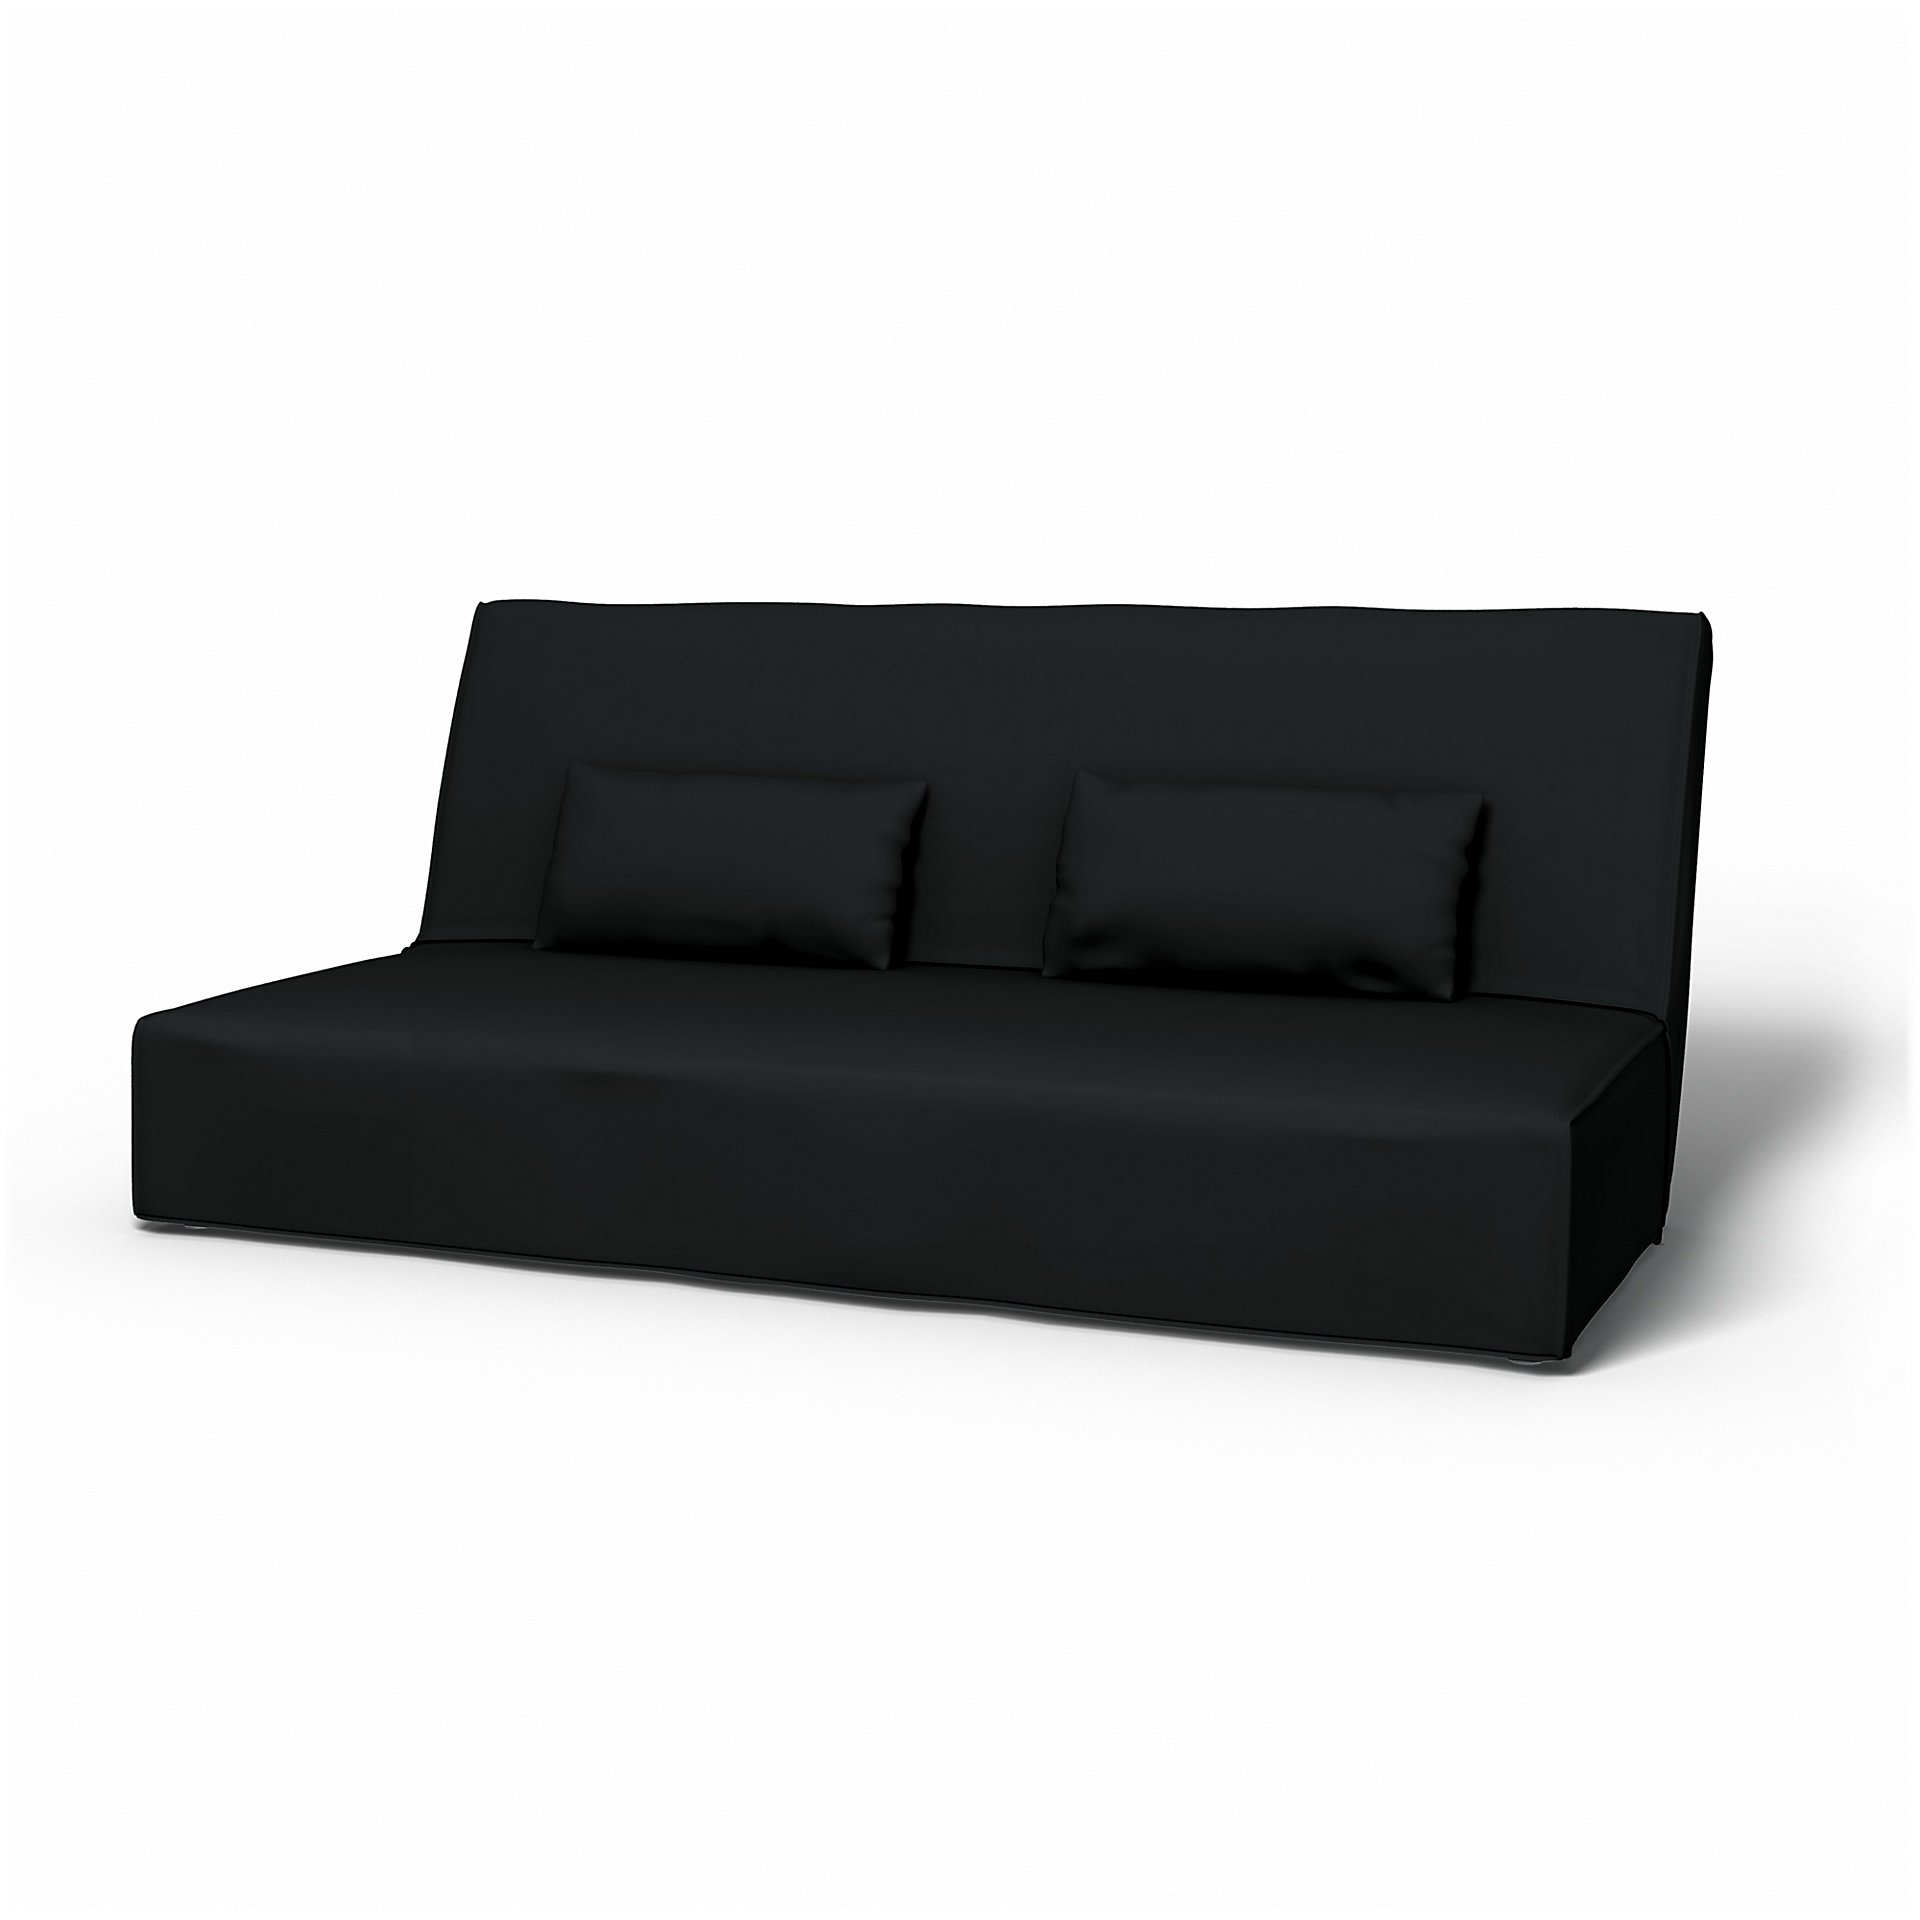 IKEA - Beddinge Sofa Bed Cover, Jet Black, Cotton - Bemz